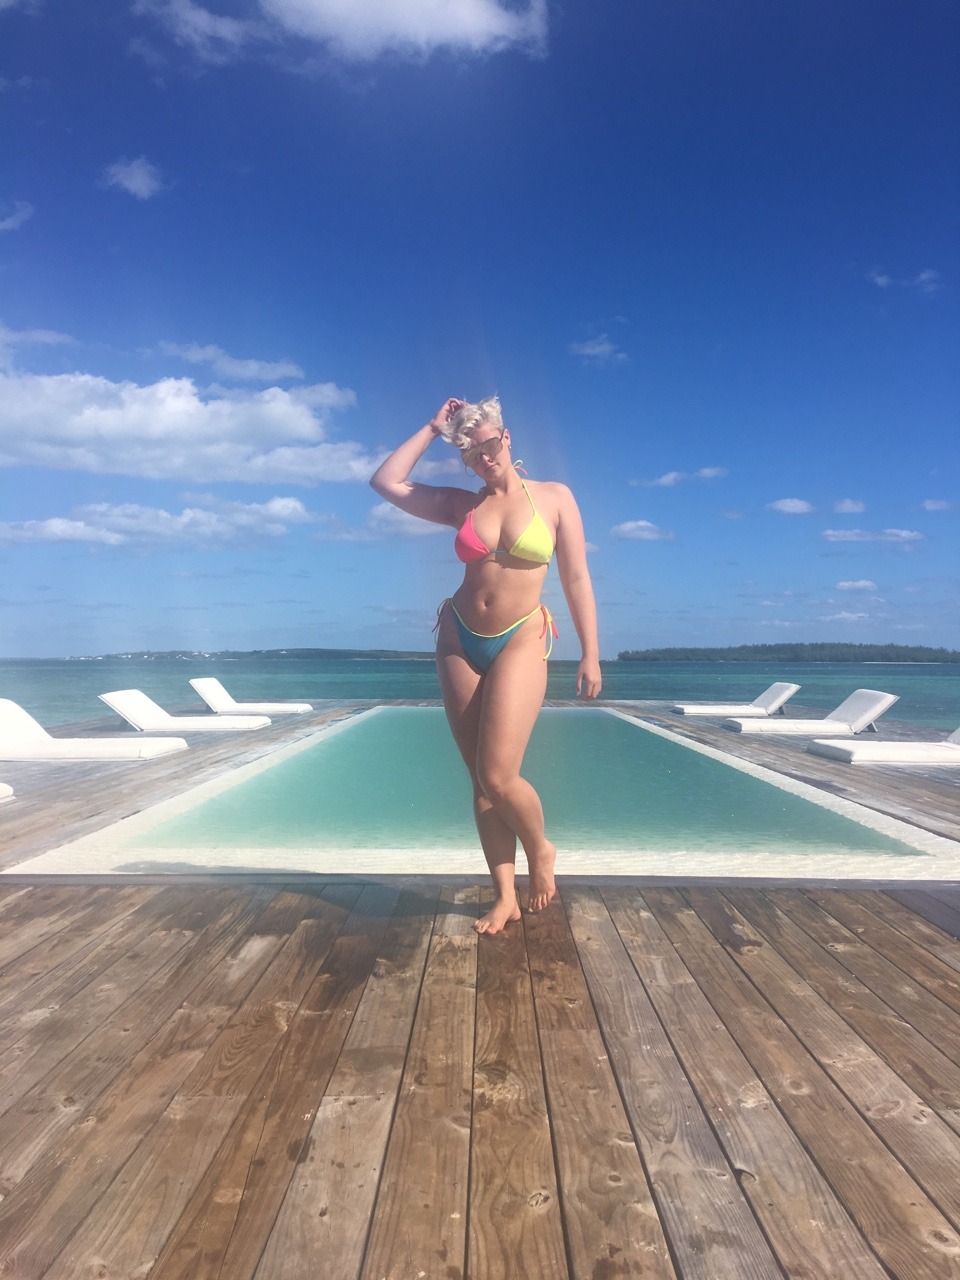 stefaniaferrario:Stefania Ferrario in bikini goddess &lt;3 ///// &lt;3